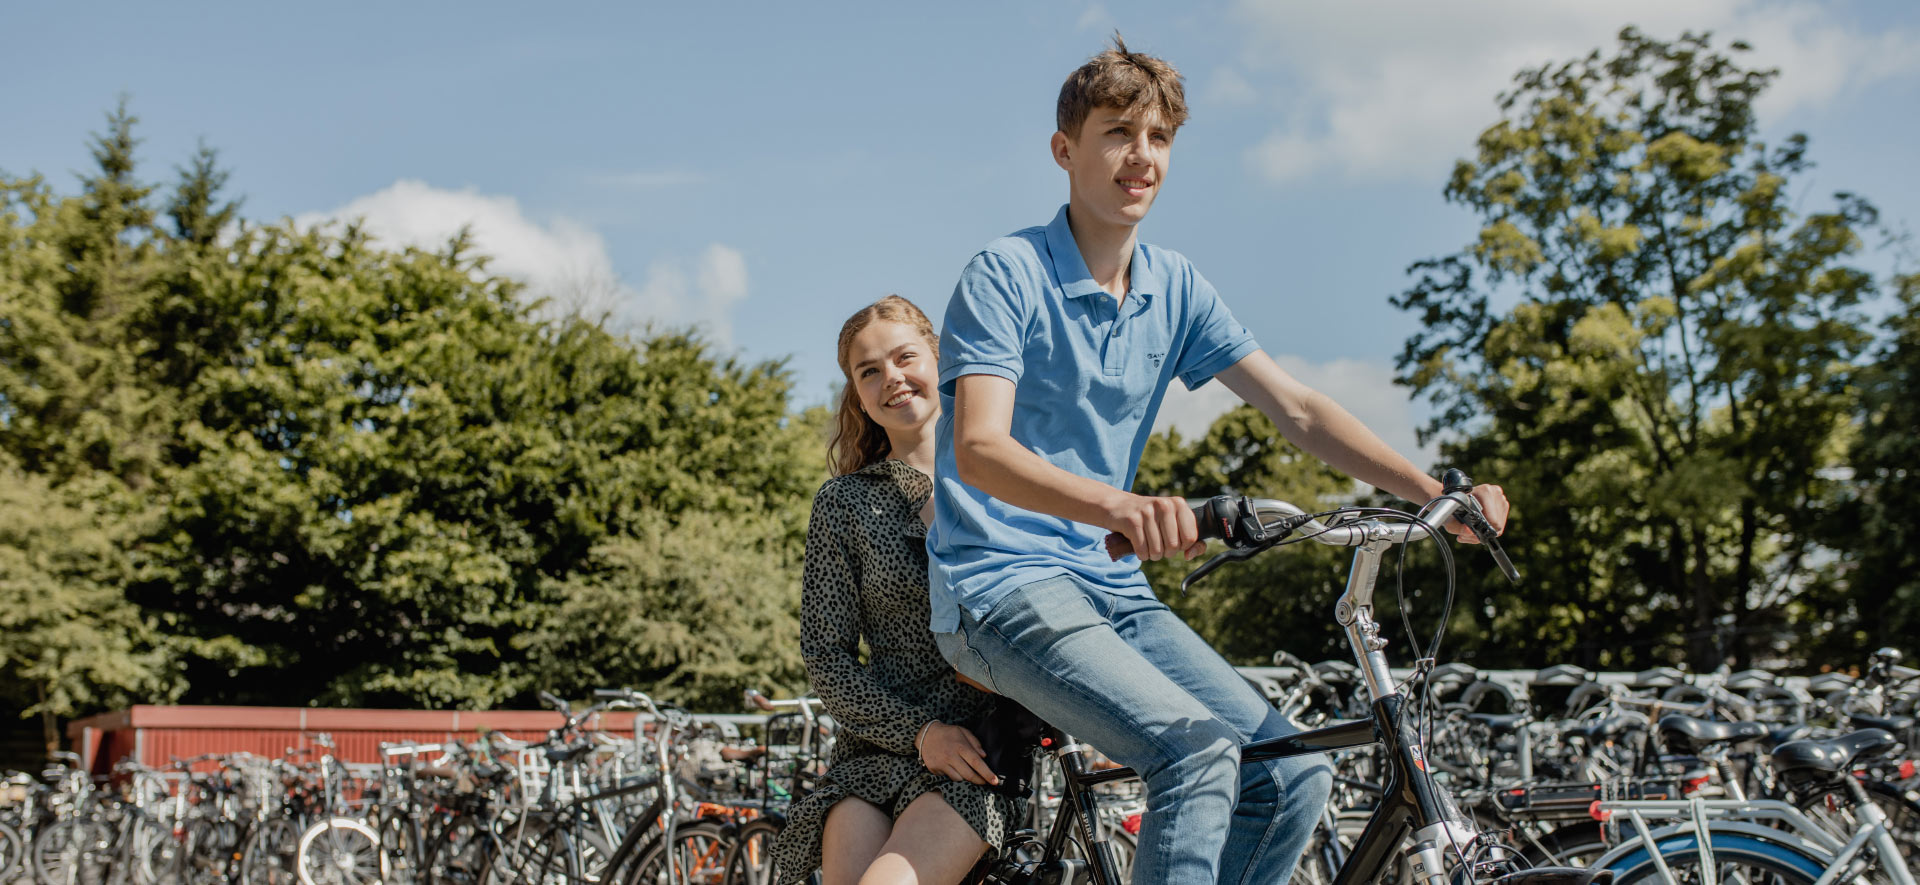 https://www.ubboemmius.nl/wp-content/uploads/2022/09/ubbo-stationslaan-jongen-meisje-fiets.jpg